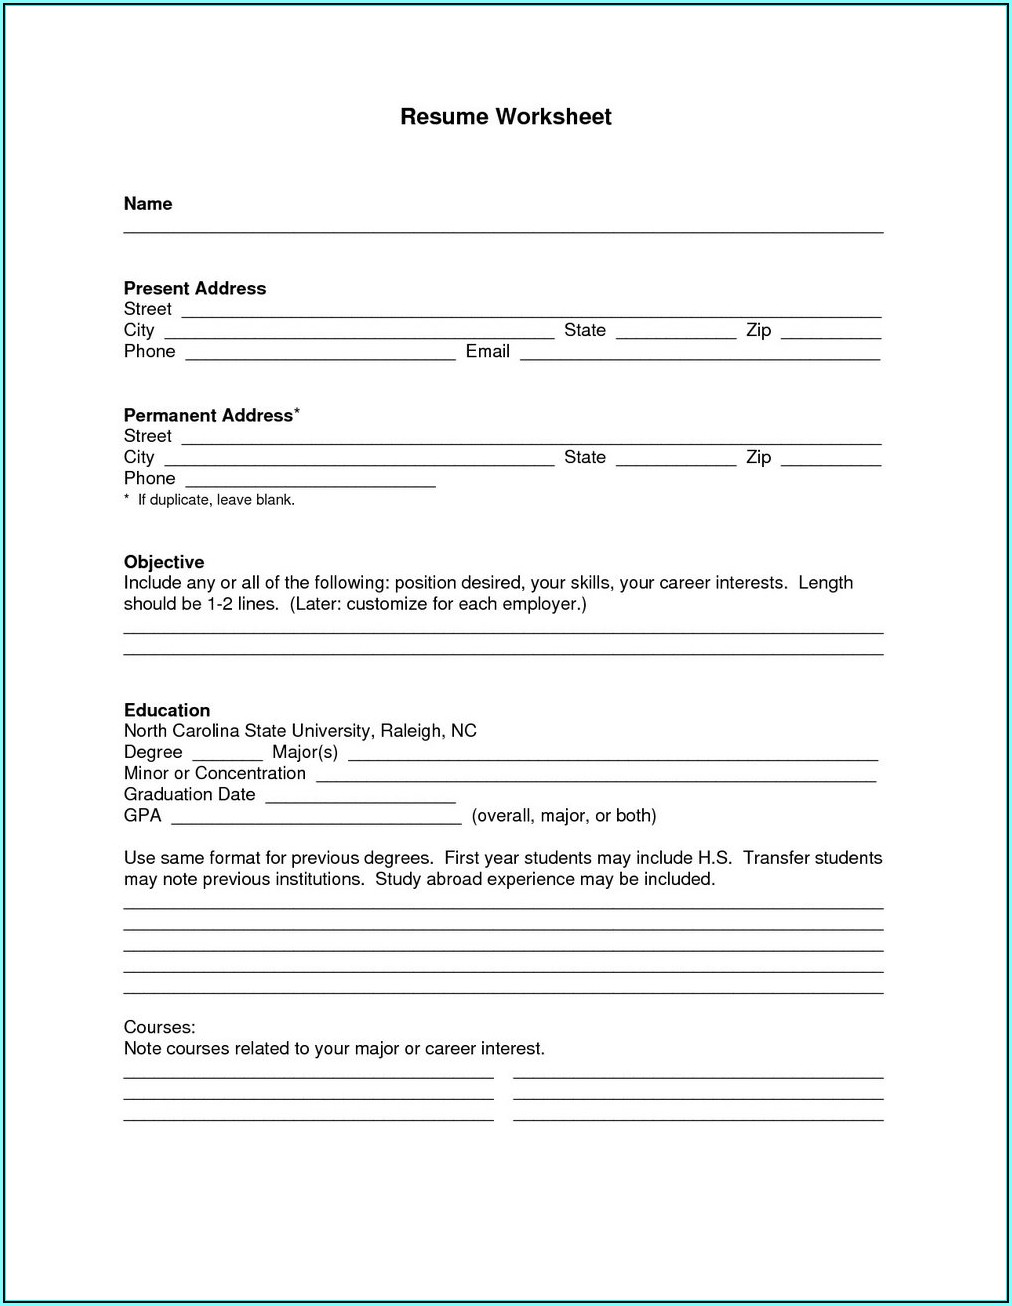 Resume Format For Teacher In Word File